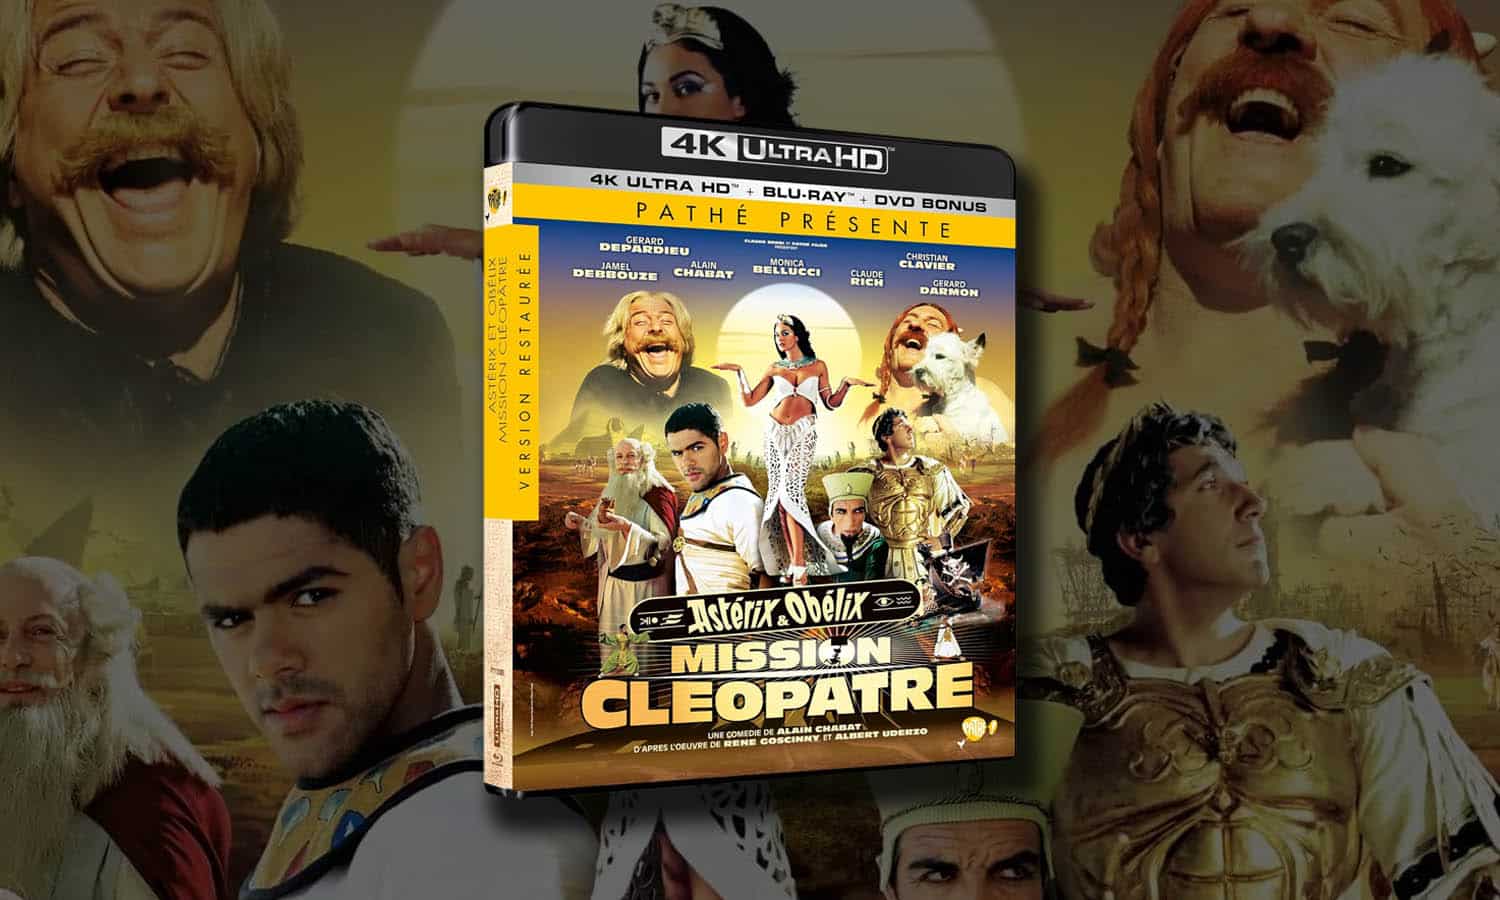 Astérix & Obélix Mission Cléopâtre 4K : un film culte à la